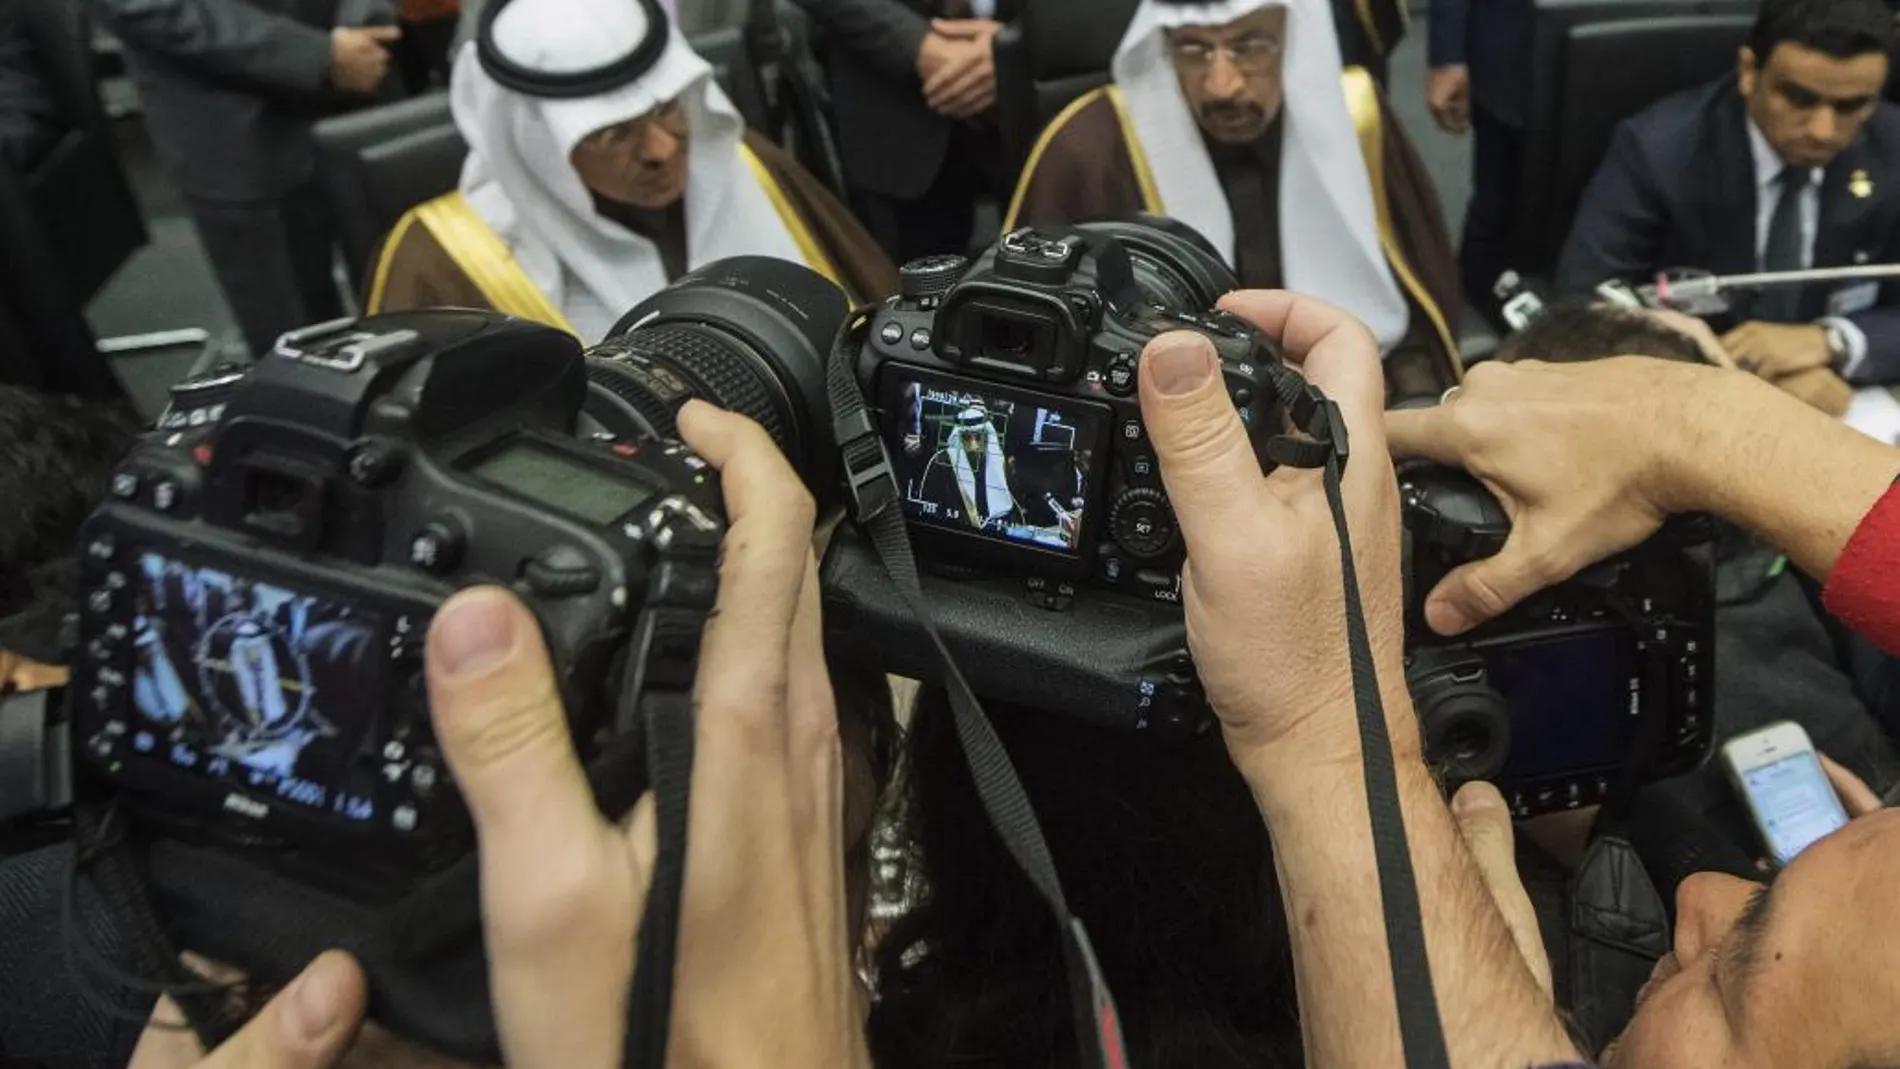 El ministro de Petróleo de Arabia Saudí, Jalid Al-Falih (c), asiste a la reunión formal de ministros de petróleo de la Organización de Países Exportadores de Petróleo (OPEP) que se celebra en Viena (Austria)